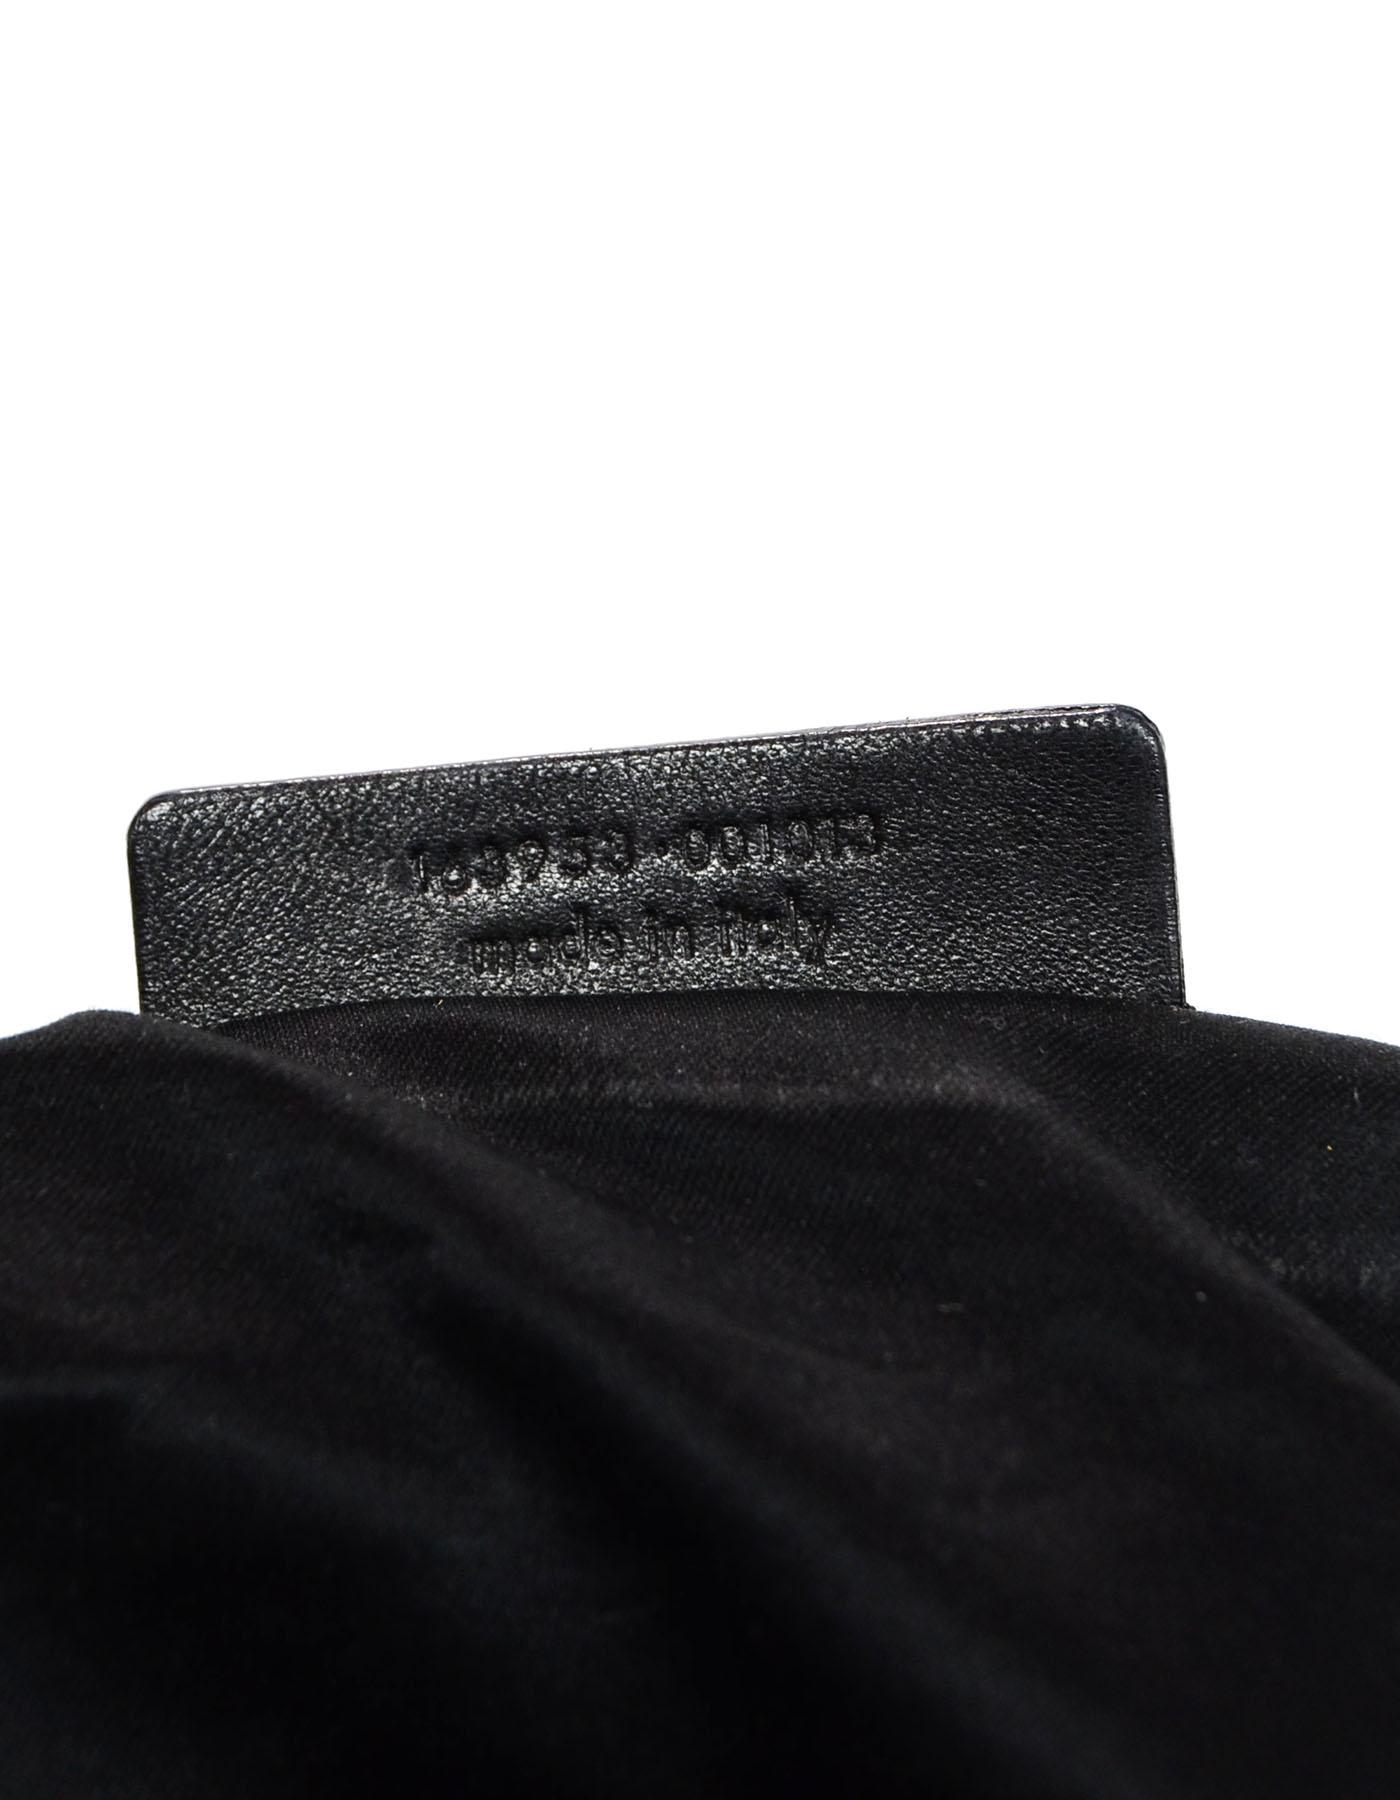 Yves Saint Laurent YSL Black Leather Drawstring Hobo Bag 3